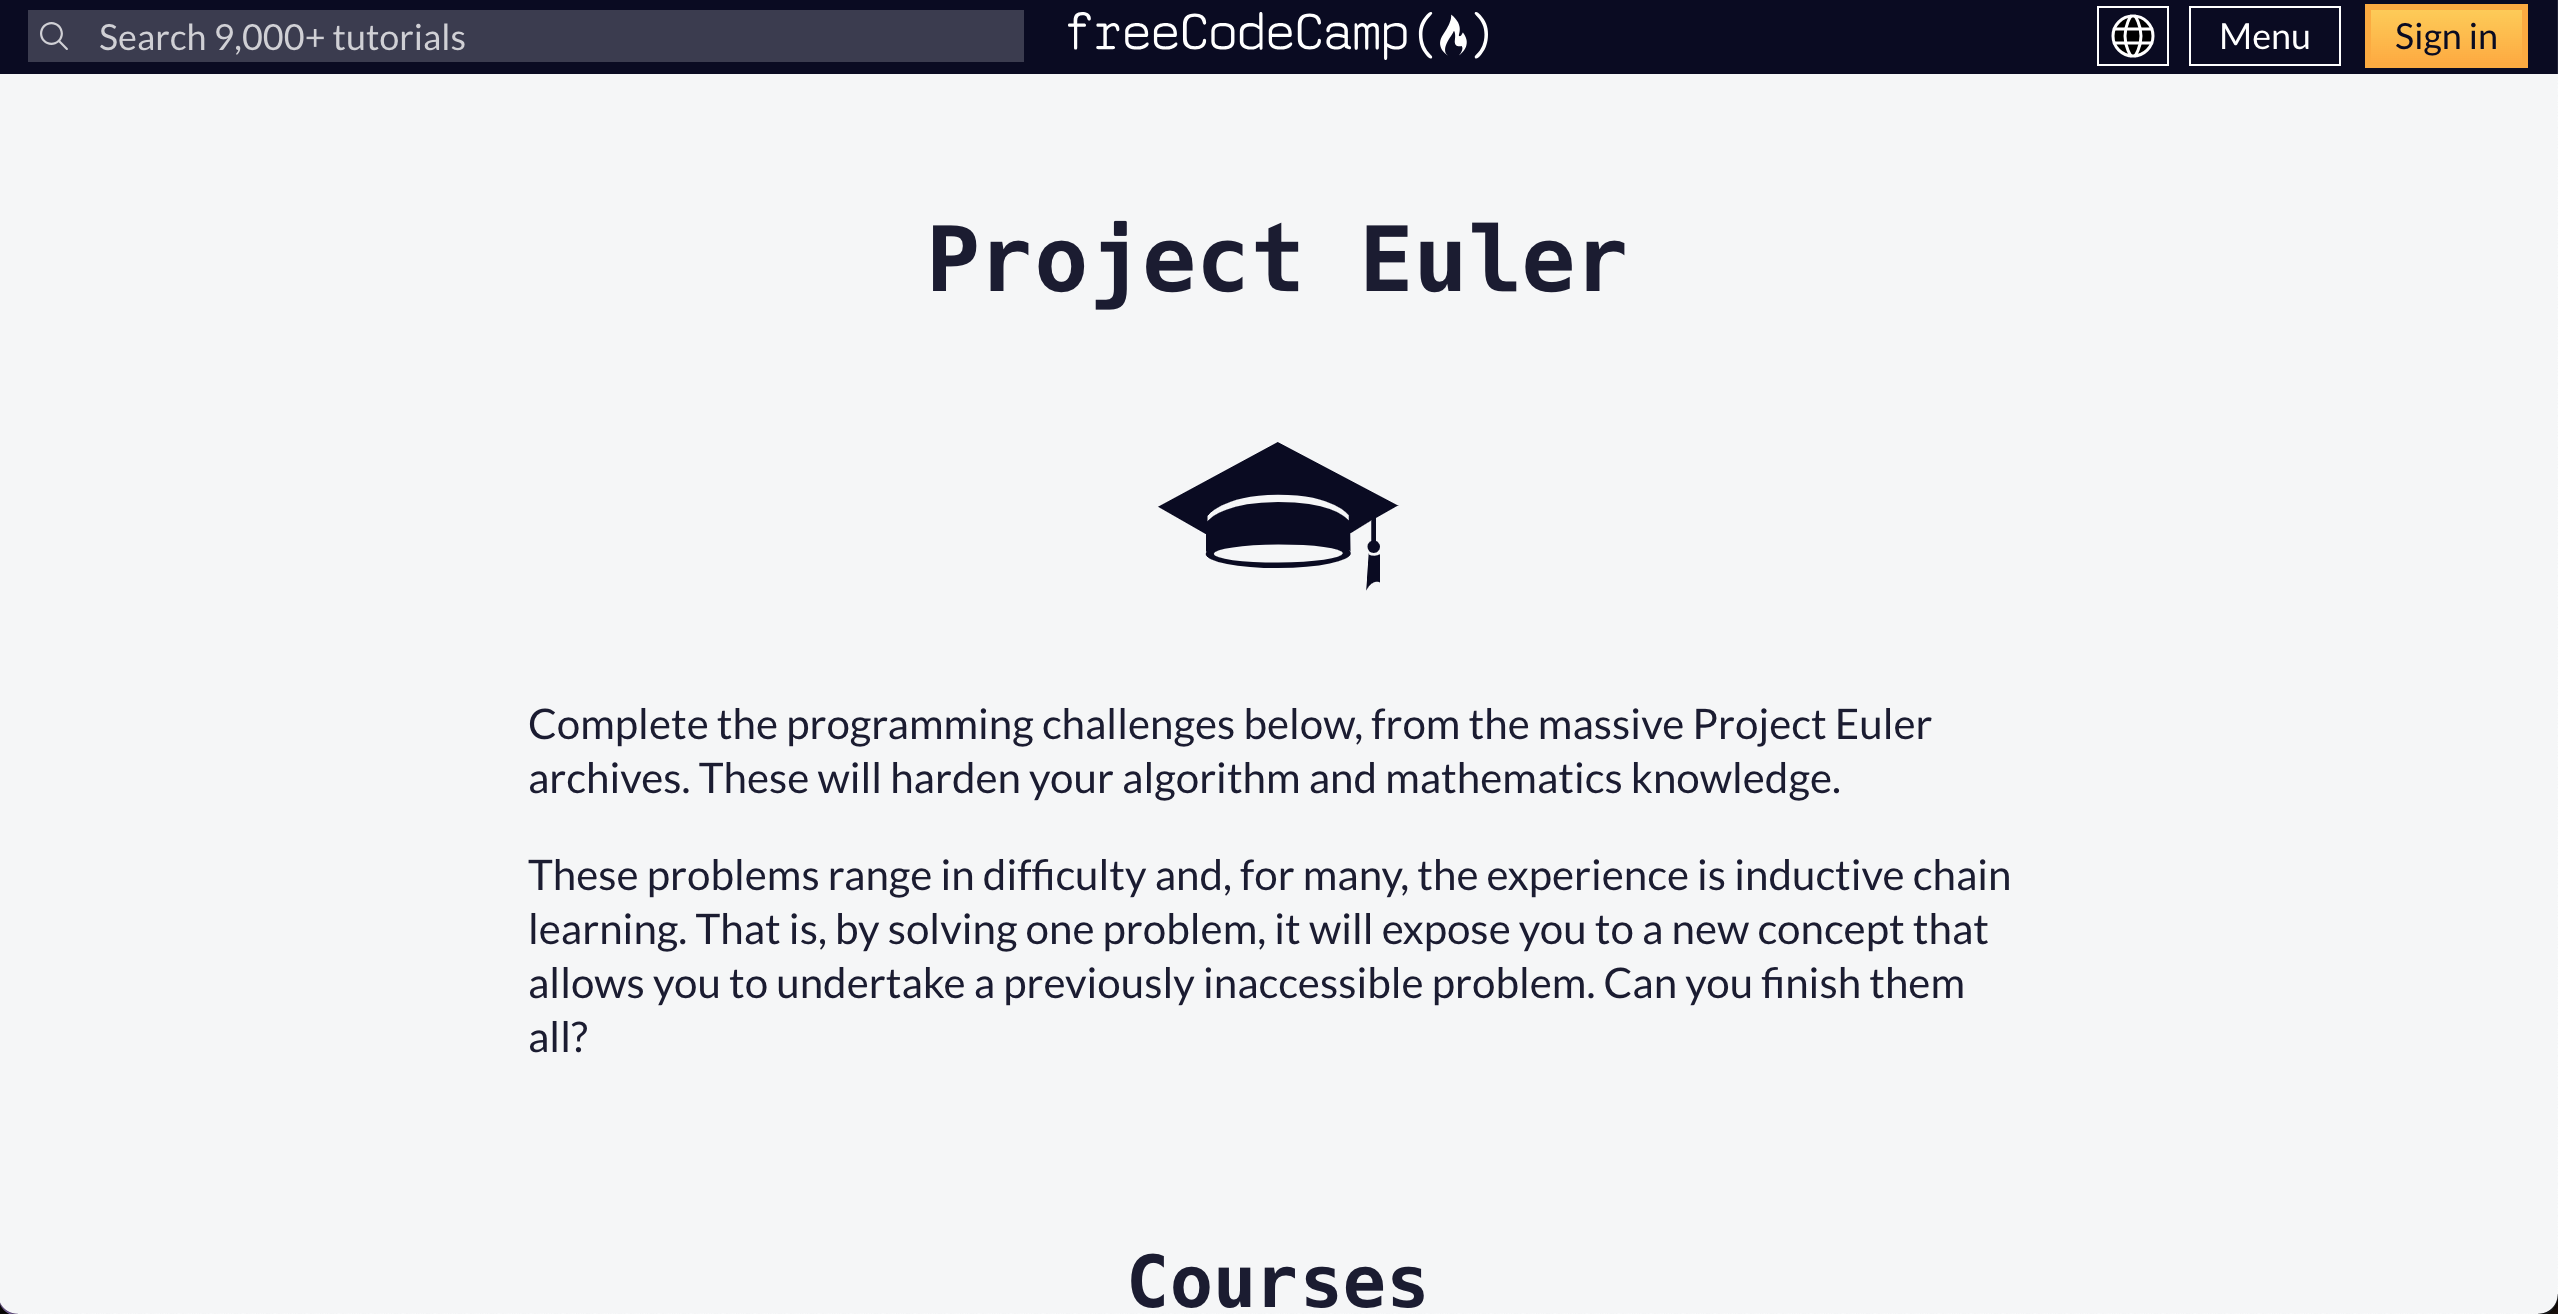 Imagem da tela inicial do site da Project Euler